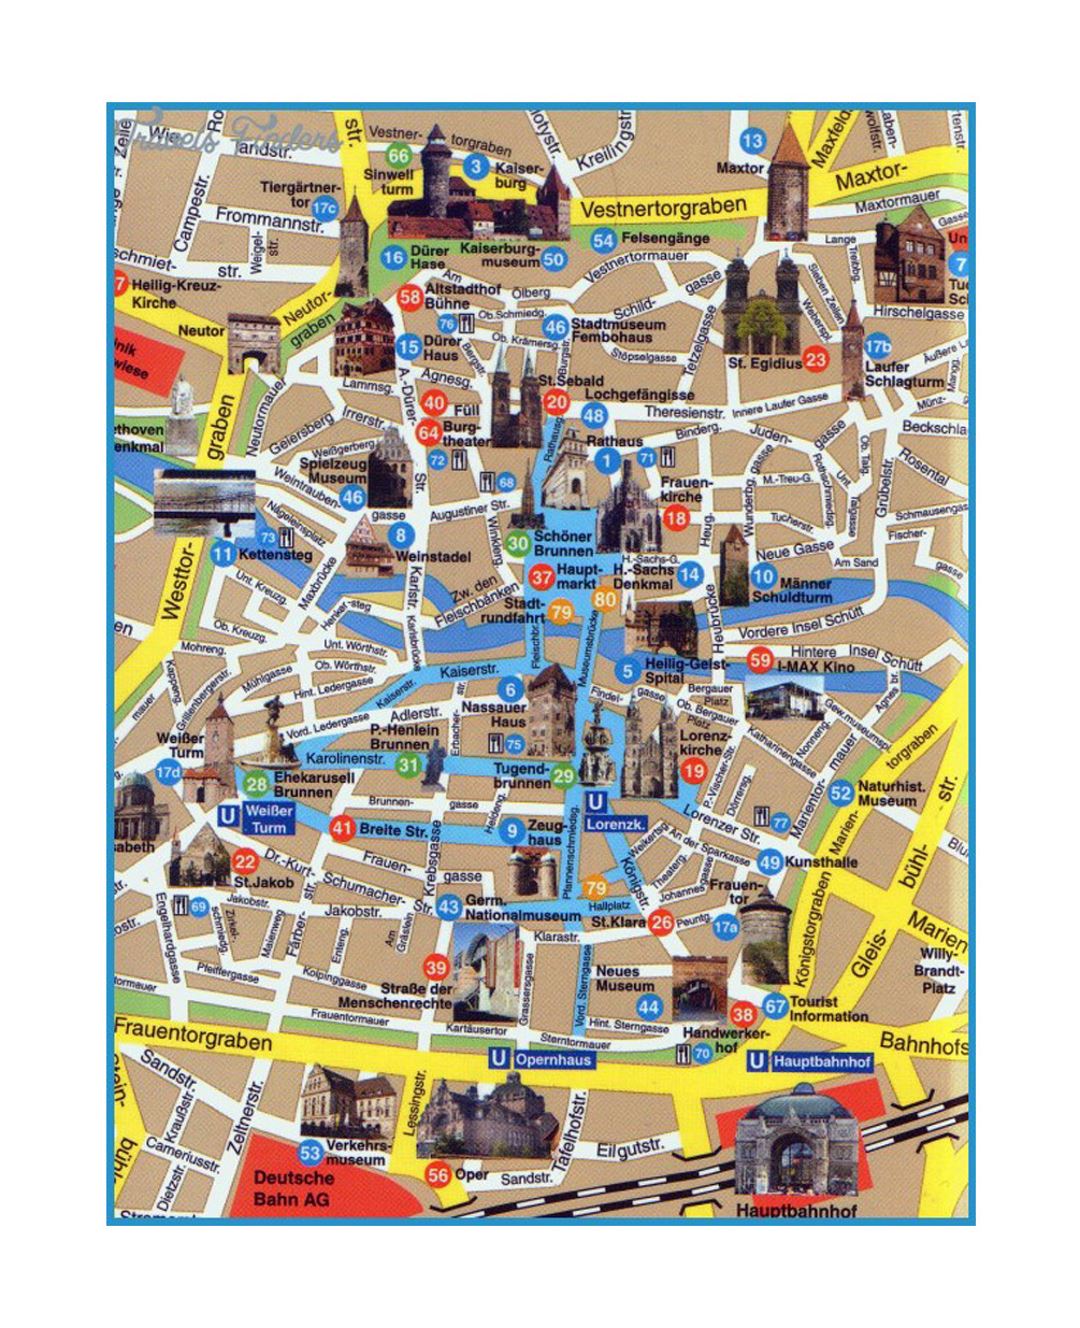 Детальная туристическая карта центральной части города Дрезден